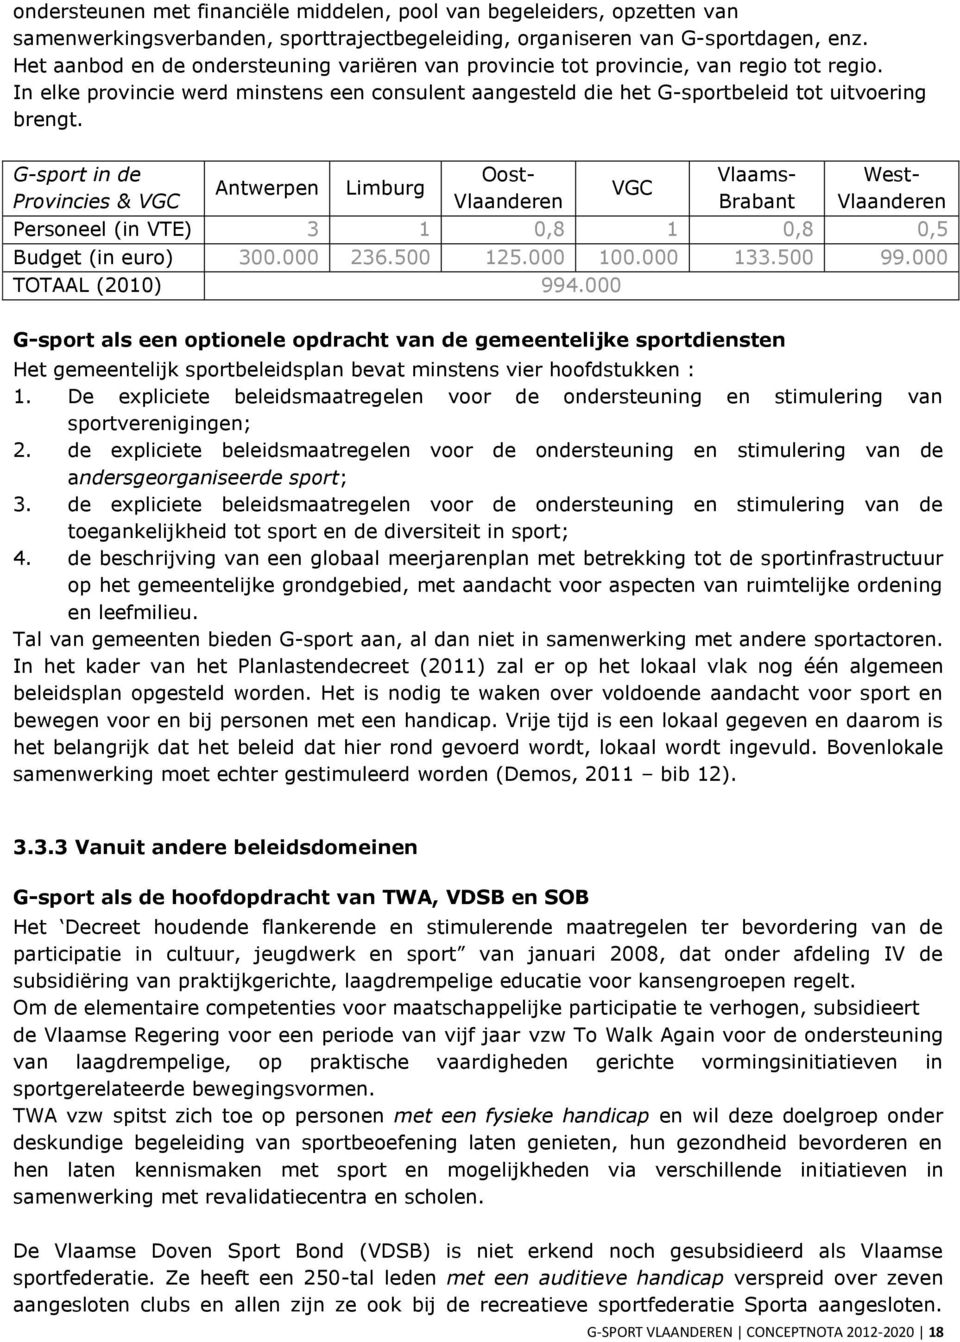 G-sport in de Provincies & VGC Antwerpen Limburg Oost- Vlaanderen VGC Vlaams- Brabant West- Vlaanderen Personeel (in VTE) 3 1 0,8 1 0,8 0,5 Budget (in euro) 300.000 236.500 125.000 100.000 133.500 99.